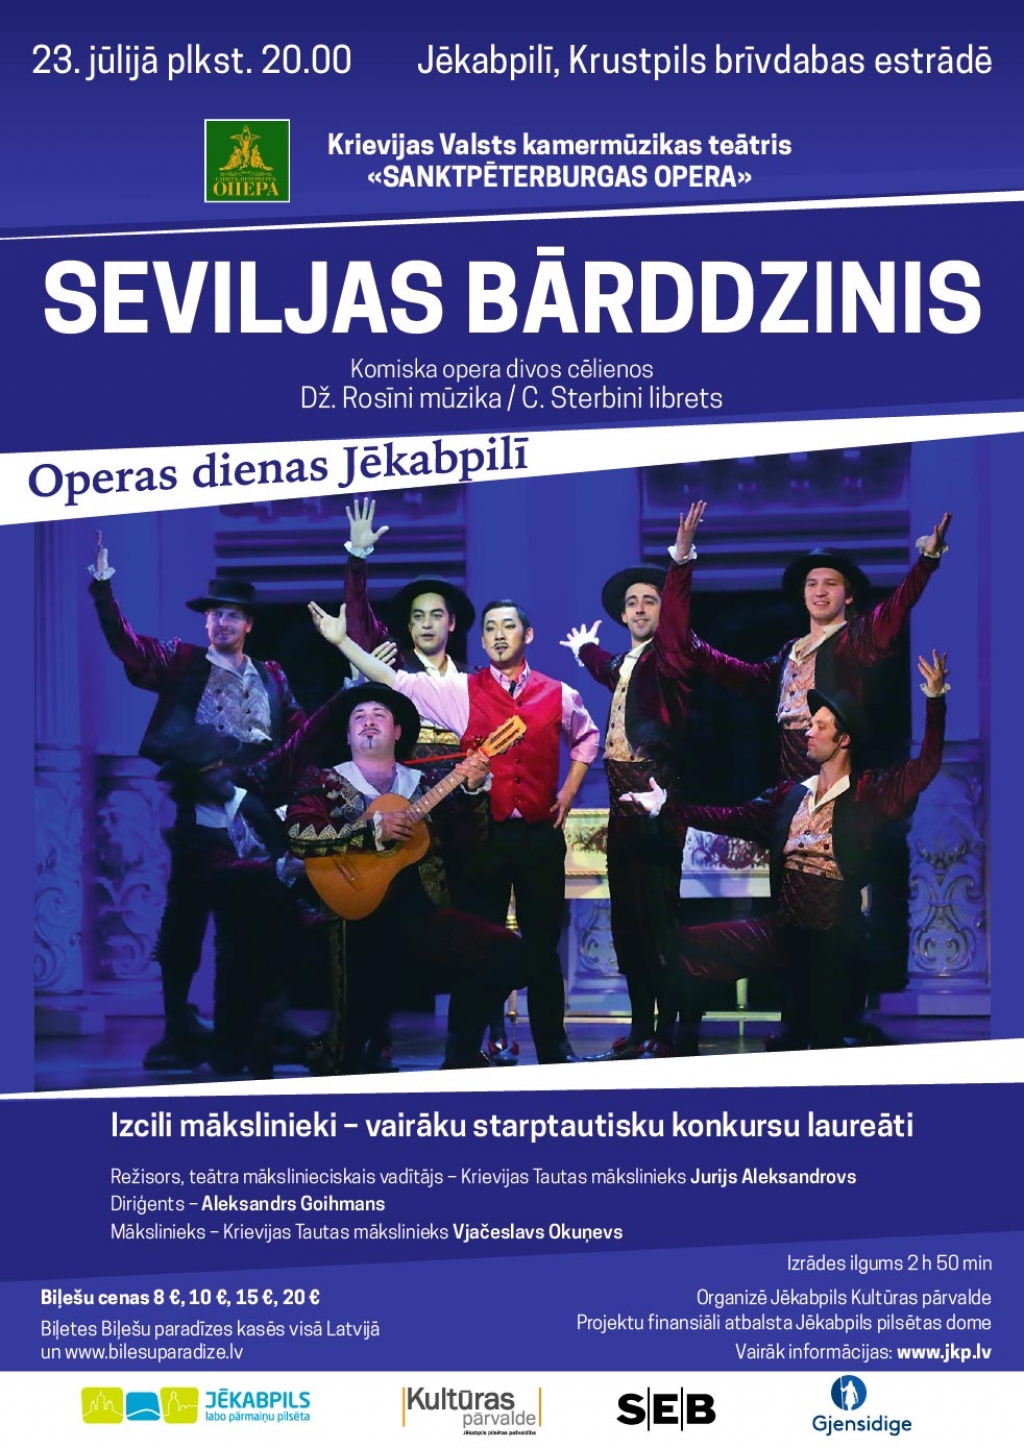 Jēkabpilī viesosies Sanktpēterburgas opera